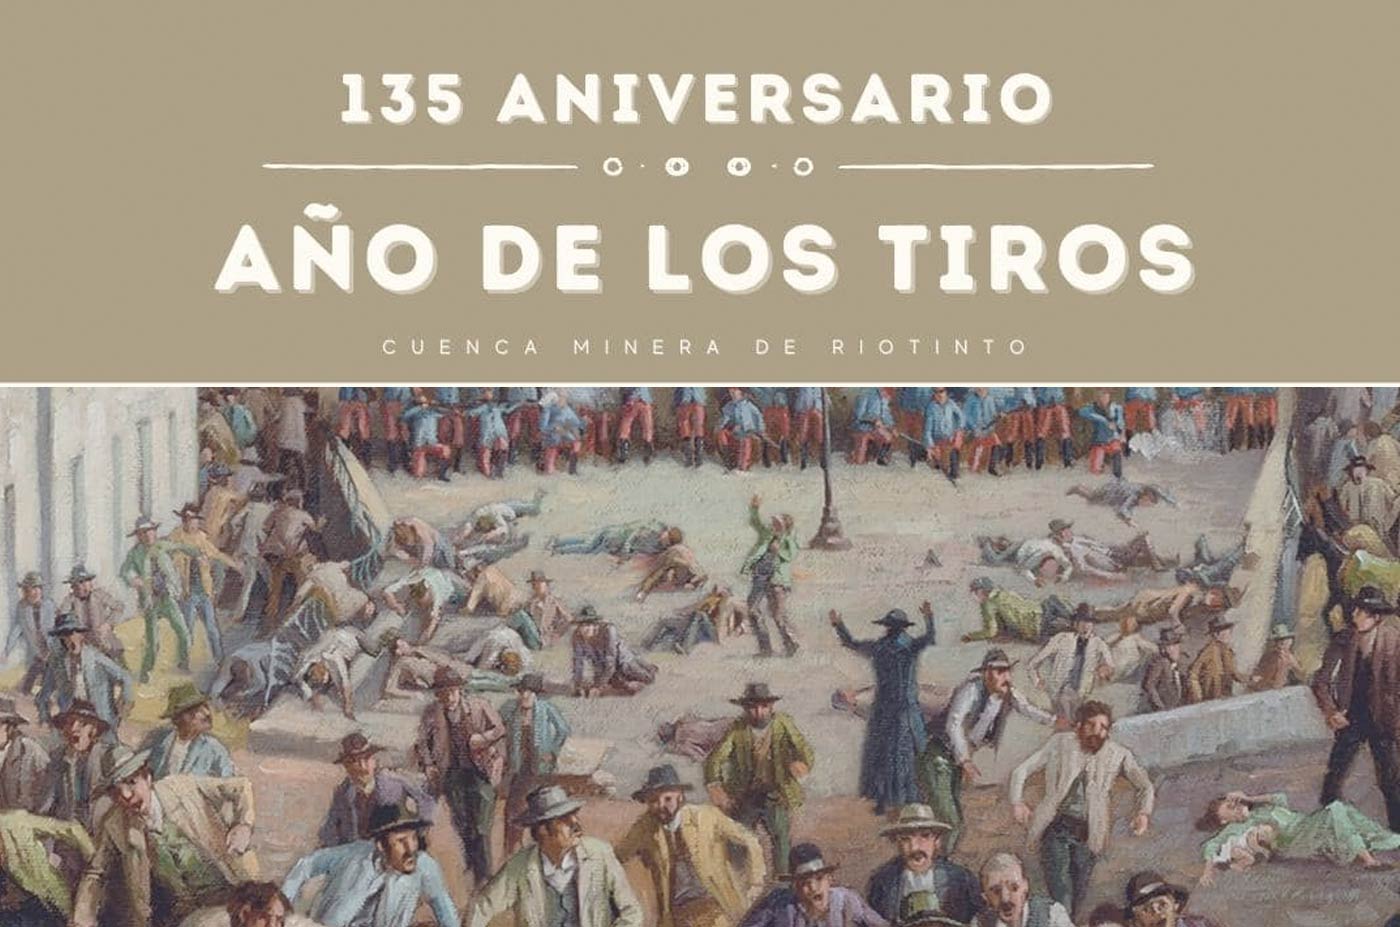 135 aniversario ano de los tiros Minas de Riotinto 4 de febrero 2023